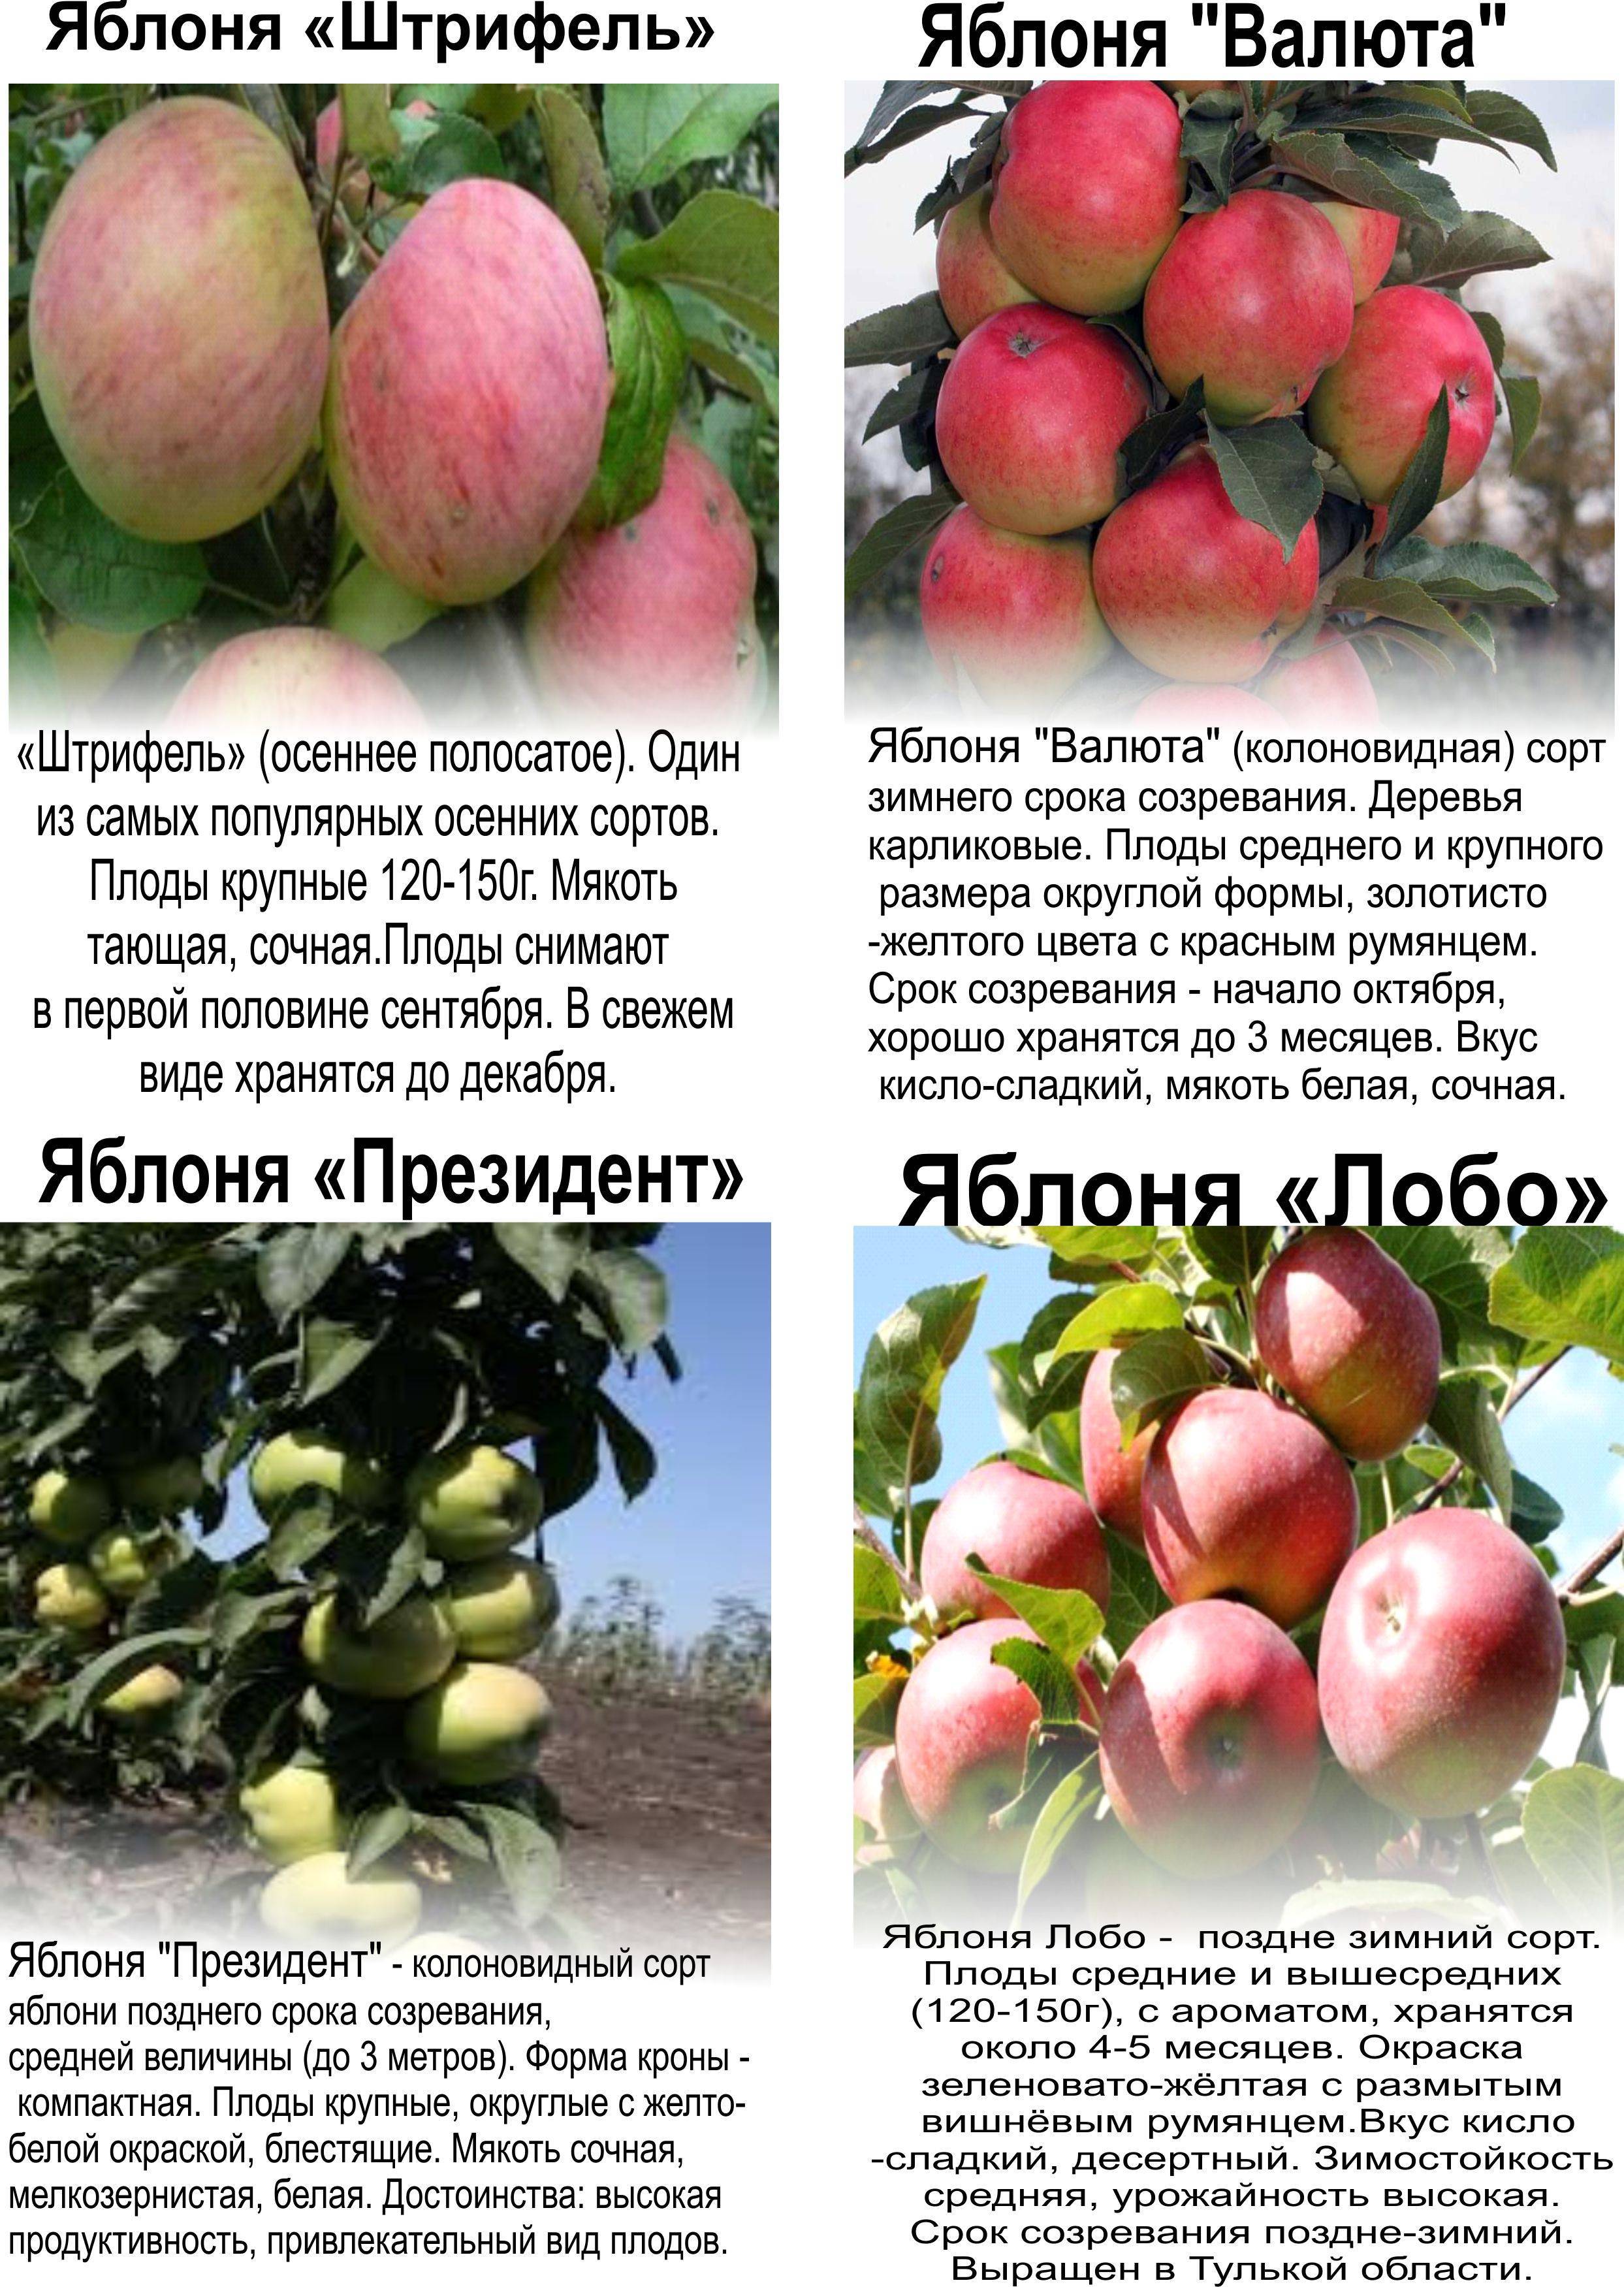 Гордость уральского сада — яблони анис свердловский